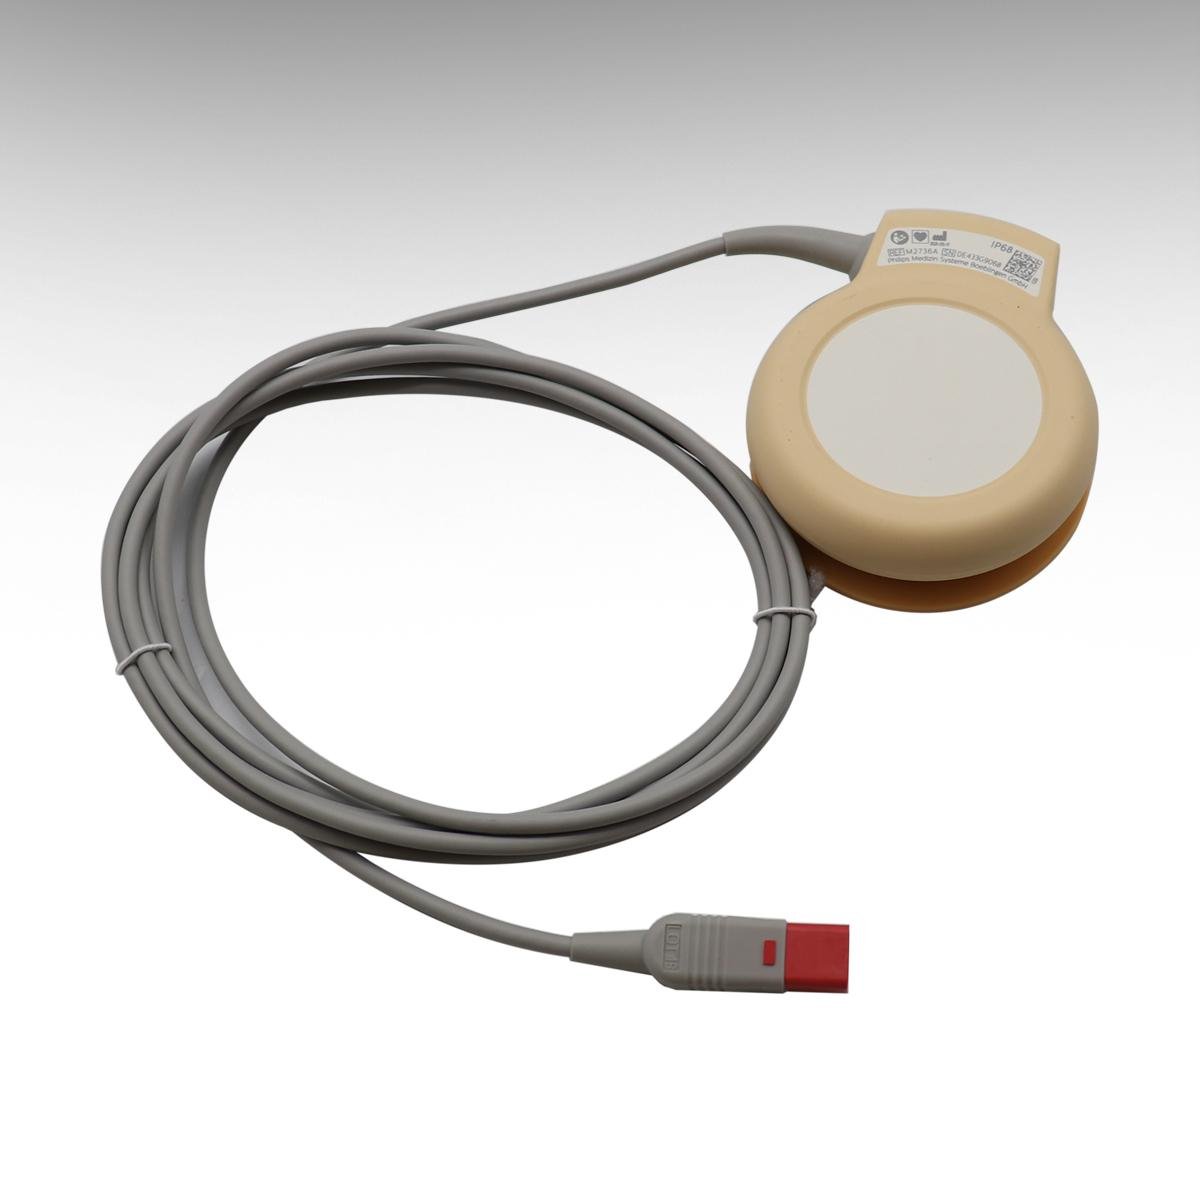 原裝飛利浦母嬰孕婦胎儿心率監護儀配件8針防水US探頭M2736A 3